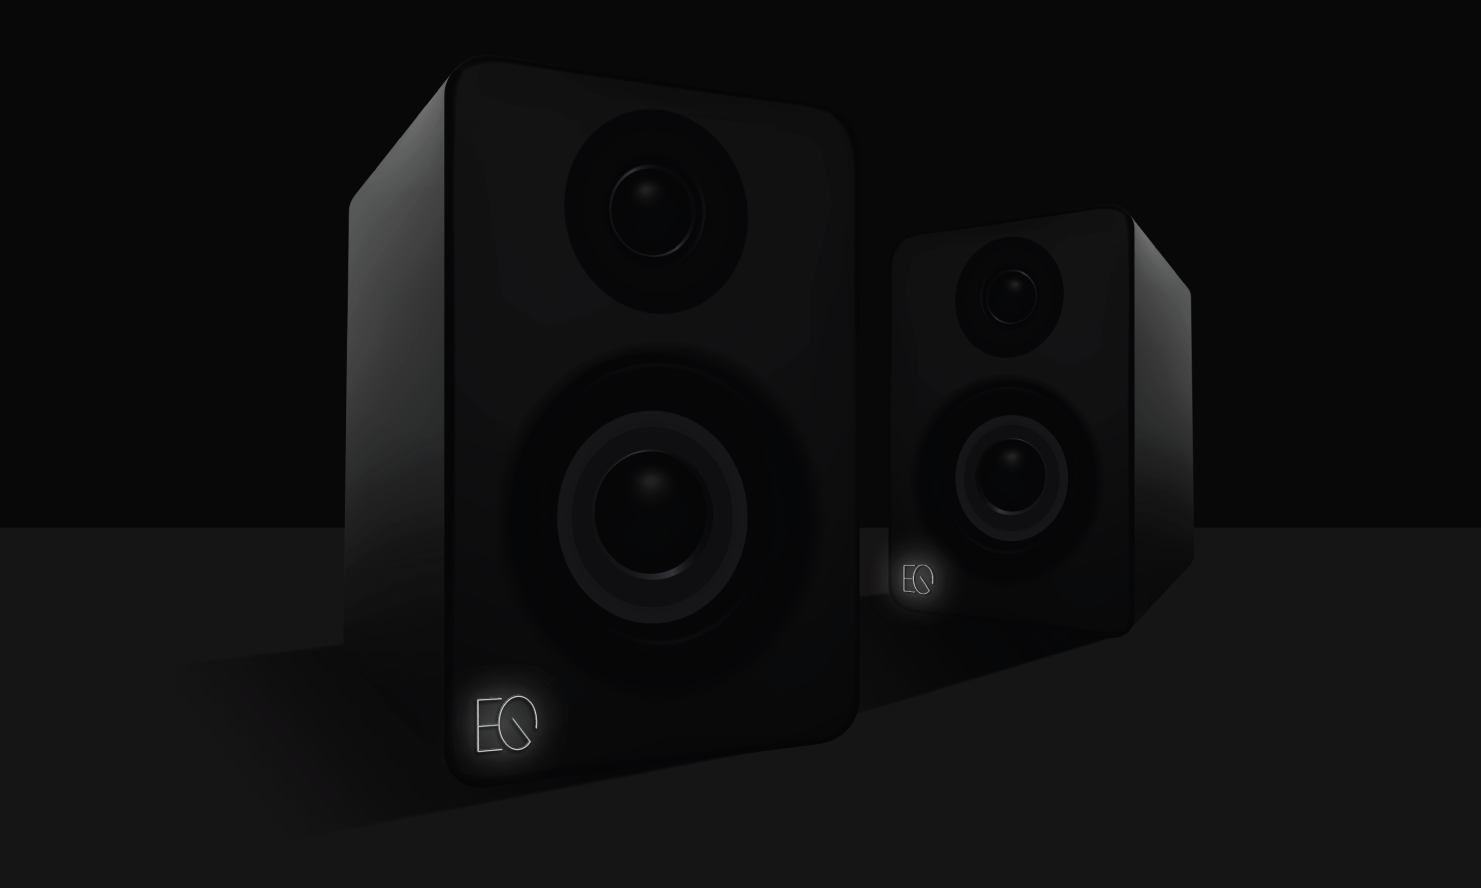 EQ Audio Concept - Speakers Lit